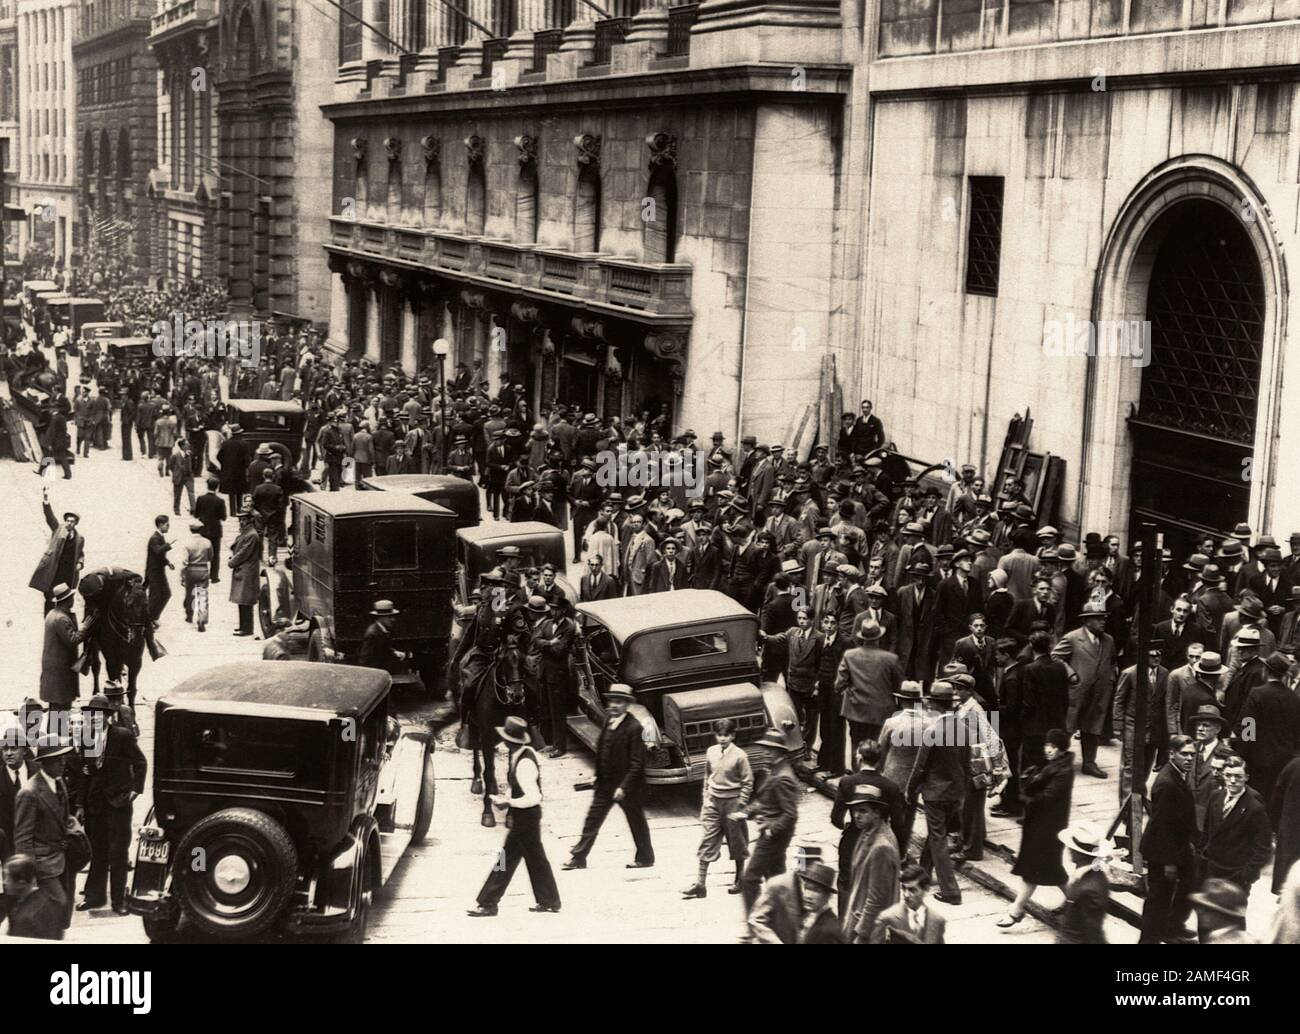 Les foules sur Wall Street 1929, les négociants En actions Paniqués, se bouscissent des trottoirs devant la Bourse de New York le jour de l'accident du marché. 1929 Banque D'Images